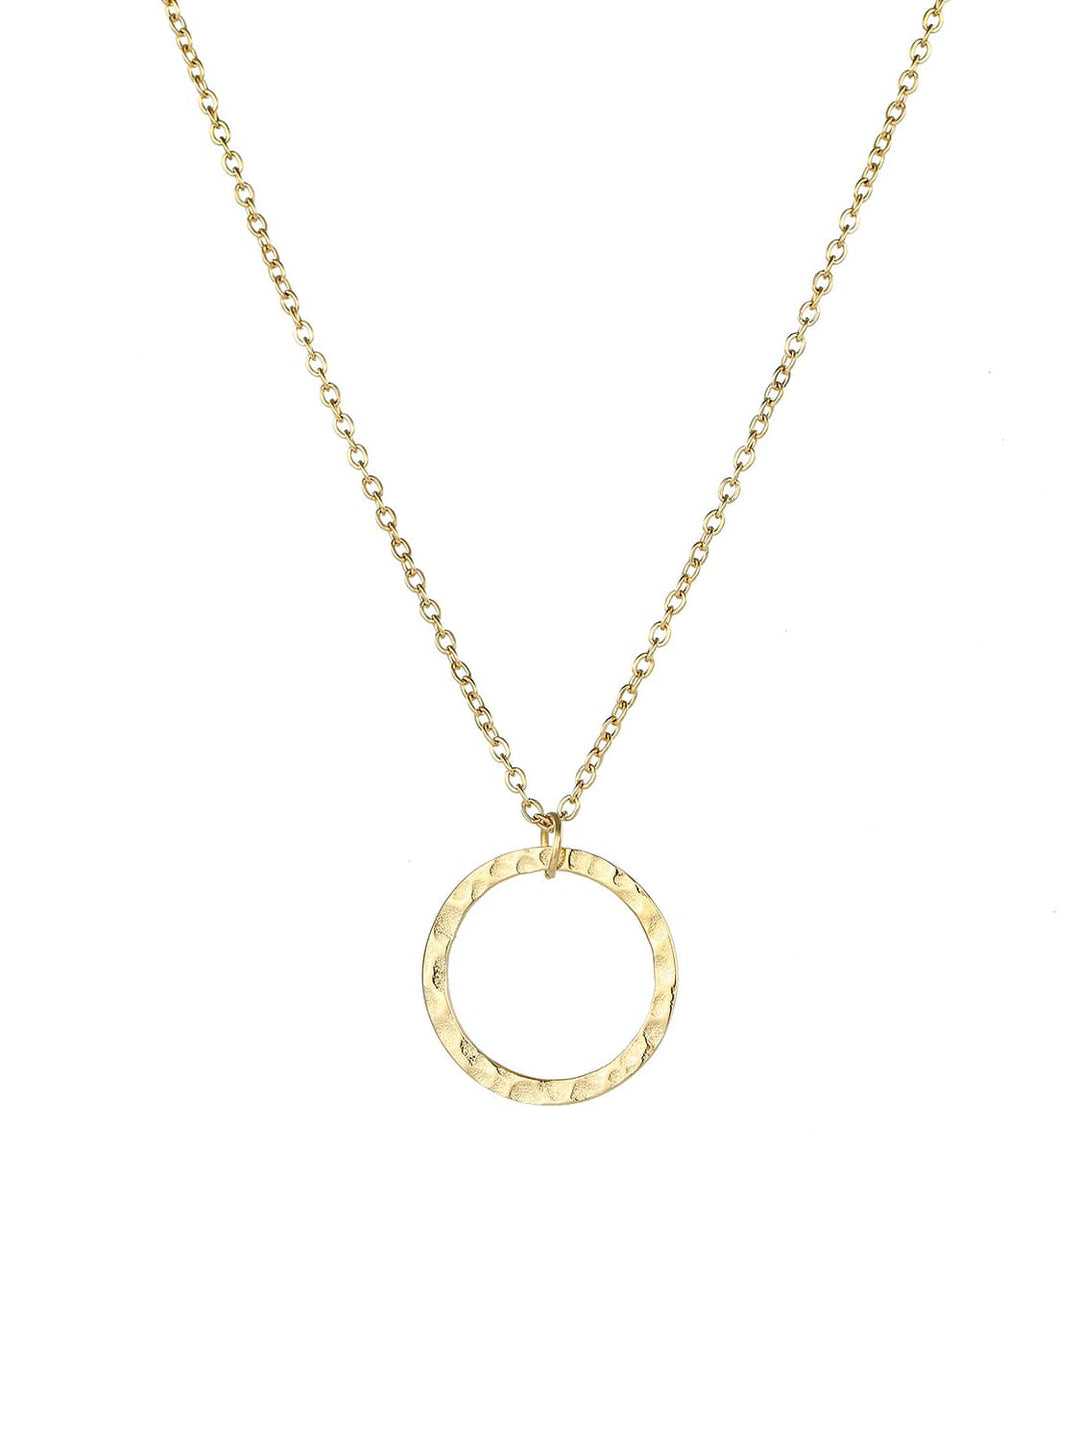 LUXE organický náhrdelník s otevřeným kruhem